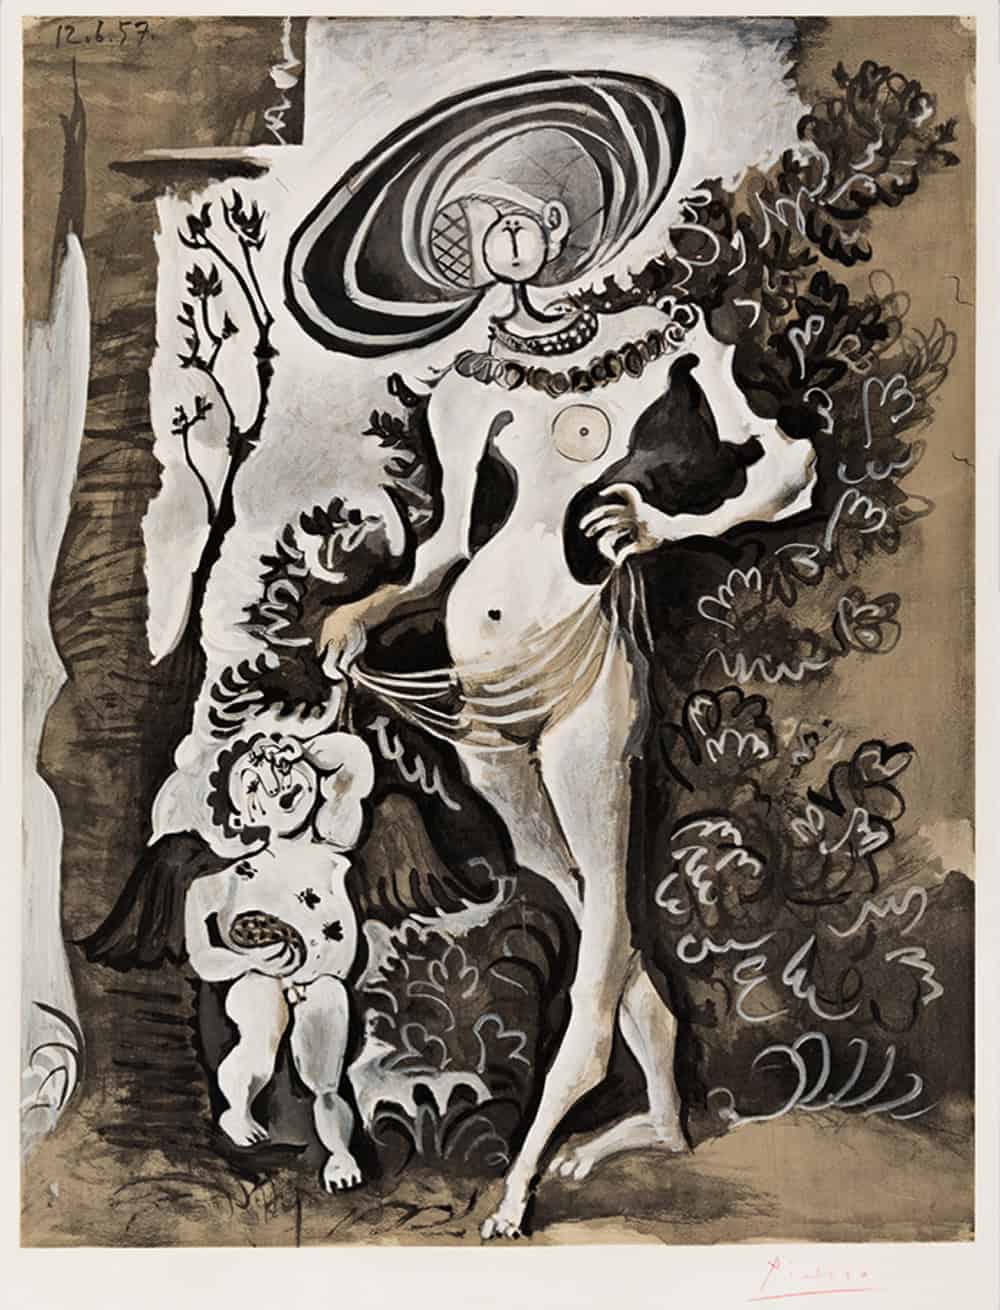 Pablo Picasso, Venus et l'Amour voleur de miel (Venus and Cupid, the Honey Thief), 1960